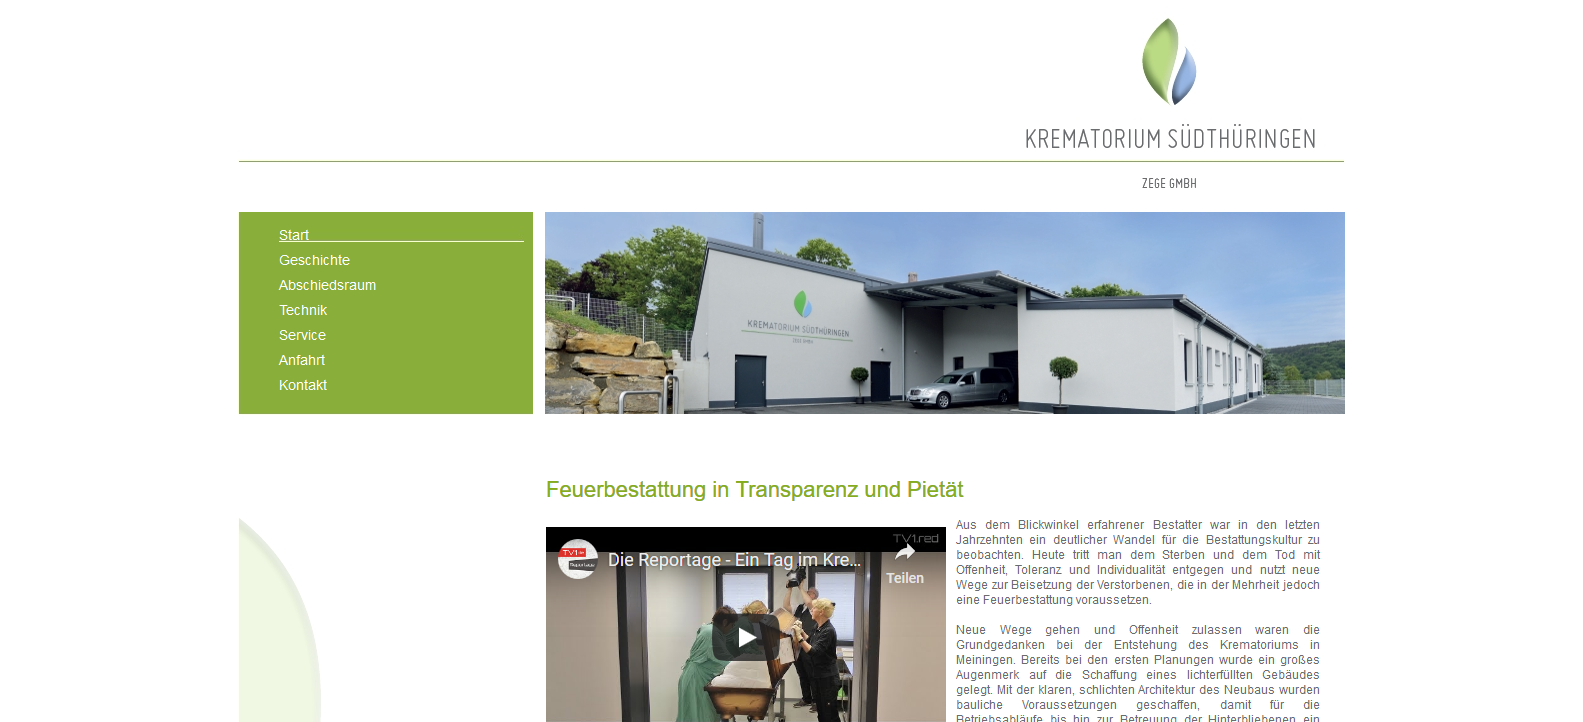 Krematorium Südthüringen - Feuerbestattung in Transparenz und Pietät